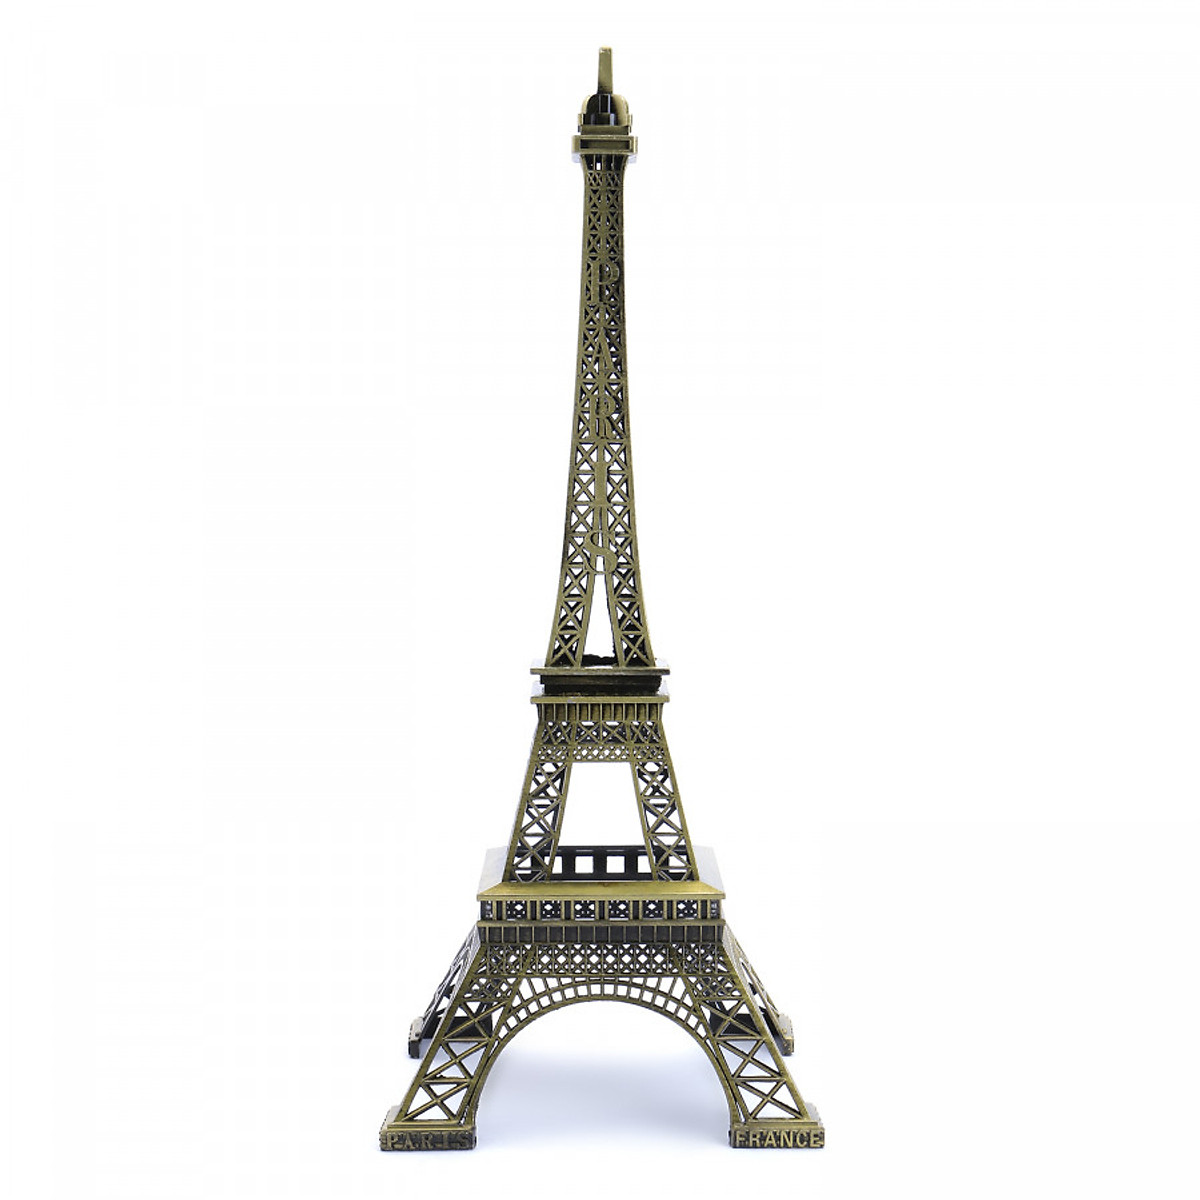 Hình ảnh cây tháp Eiffel trong thành phố imagestock0504